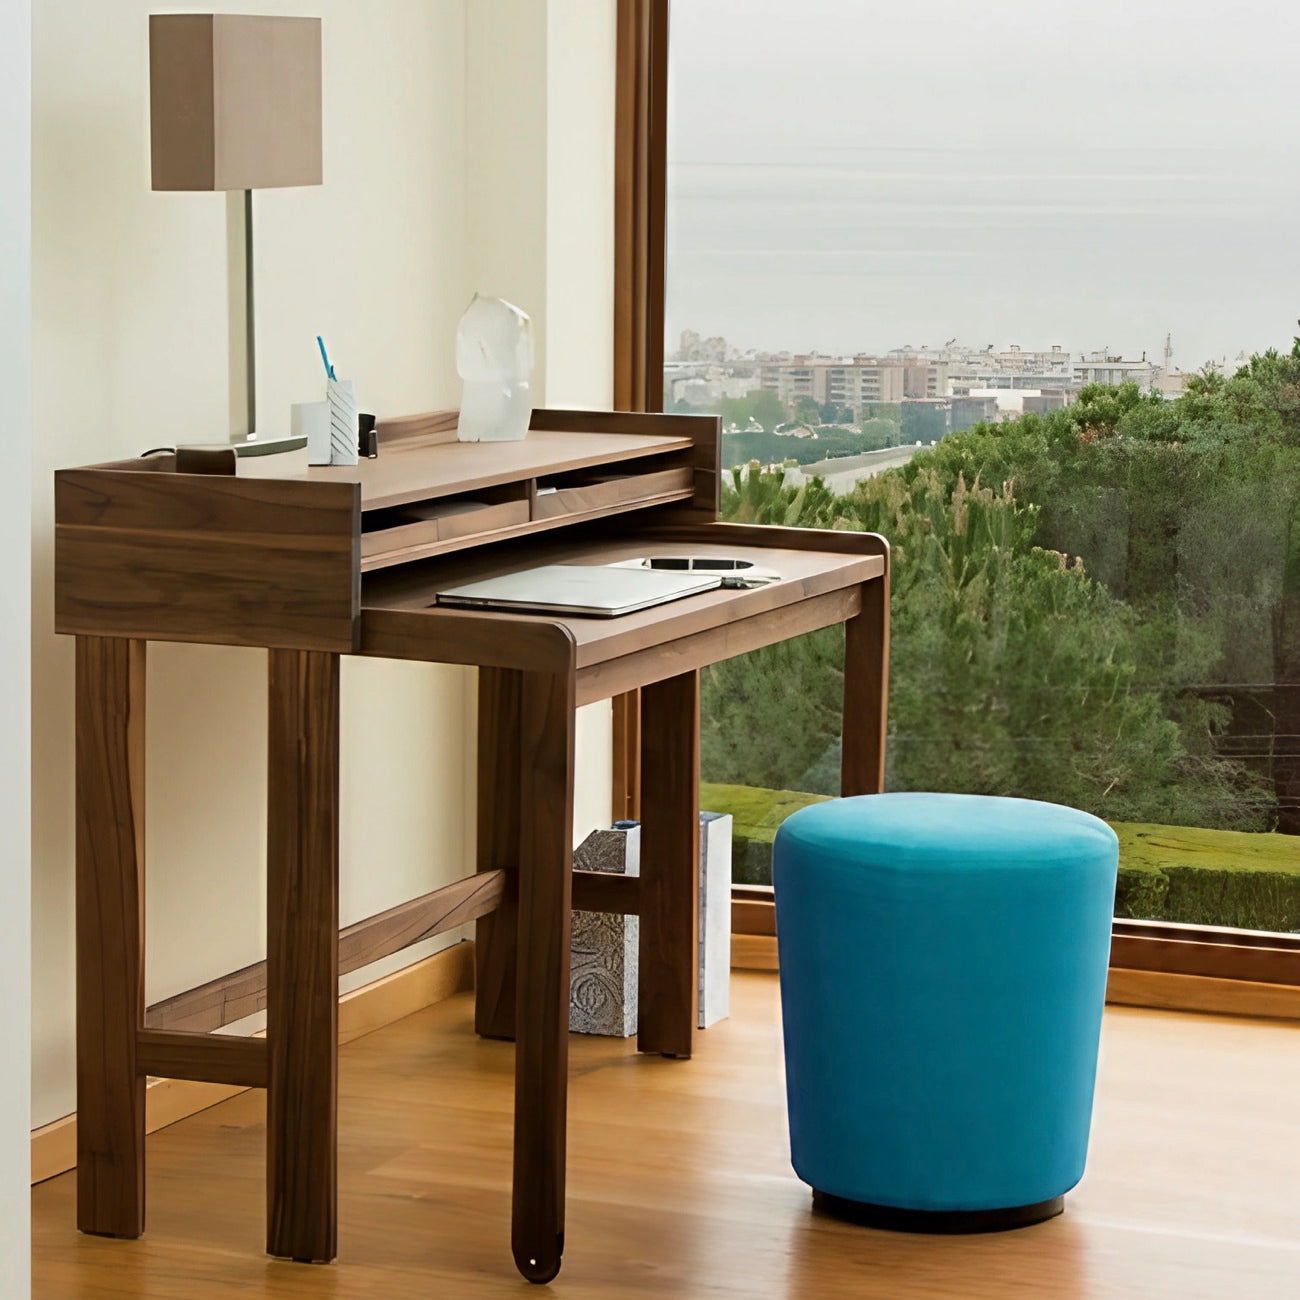 Designer Desks for your Home Office